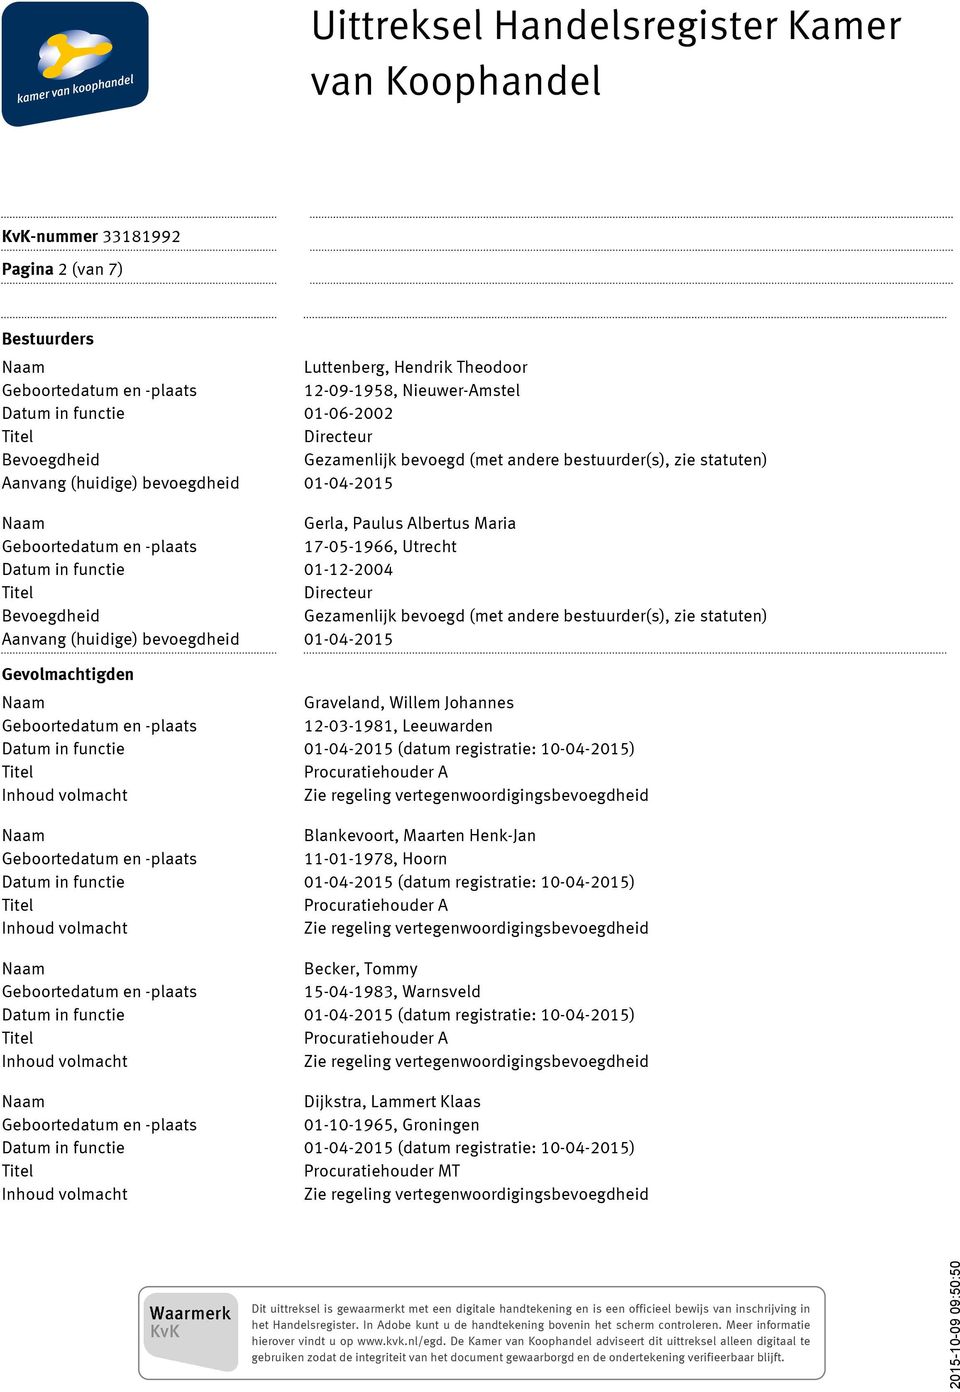 Bevoegdheid Gezamenlijk bevoegd (met andere bestuurder(s), zie statuten) Aanvang (huidige) bevoegdheid 01-04-2015 Gevolmachtigden Graveland, Willem Johannes